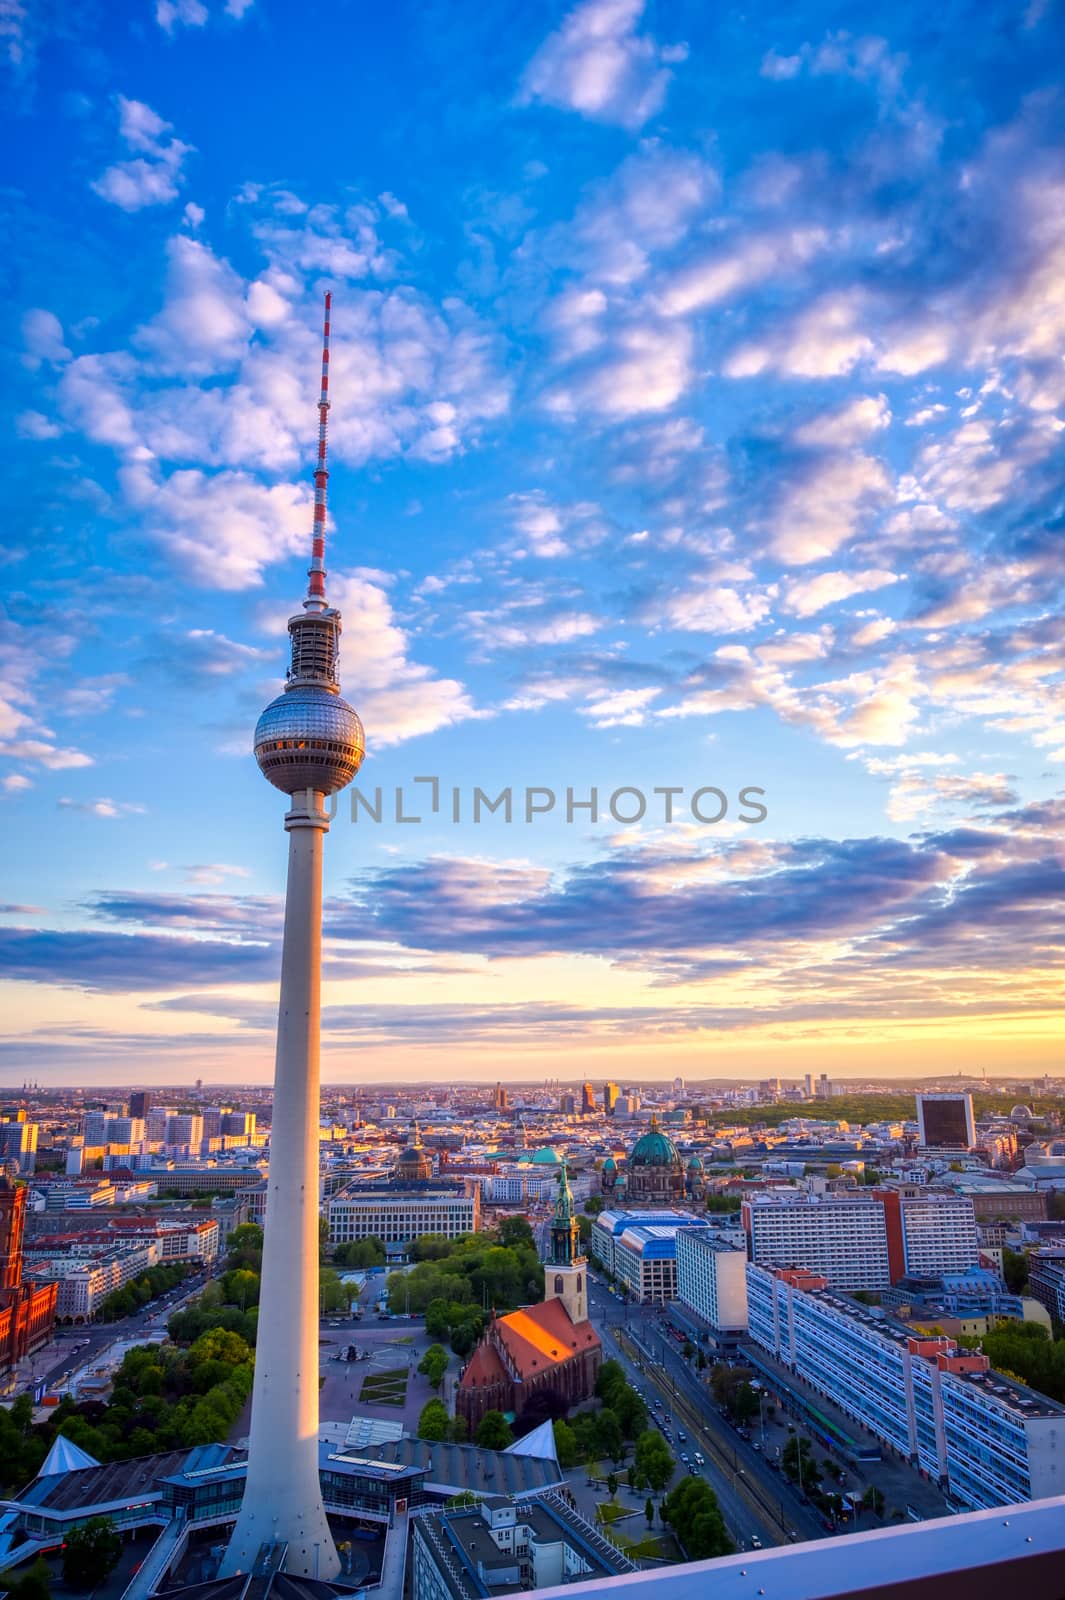 TV Tower in Berlin, Germany by jbyard22